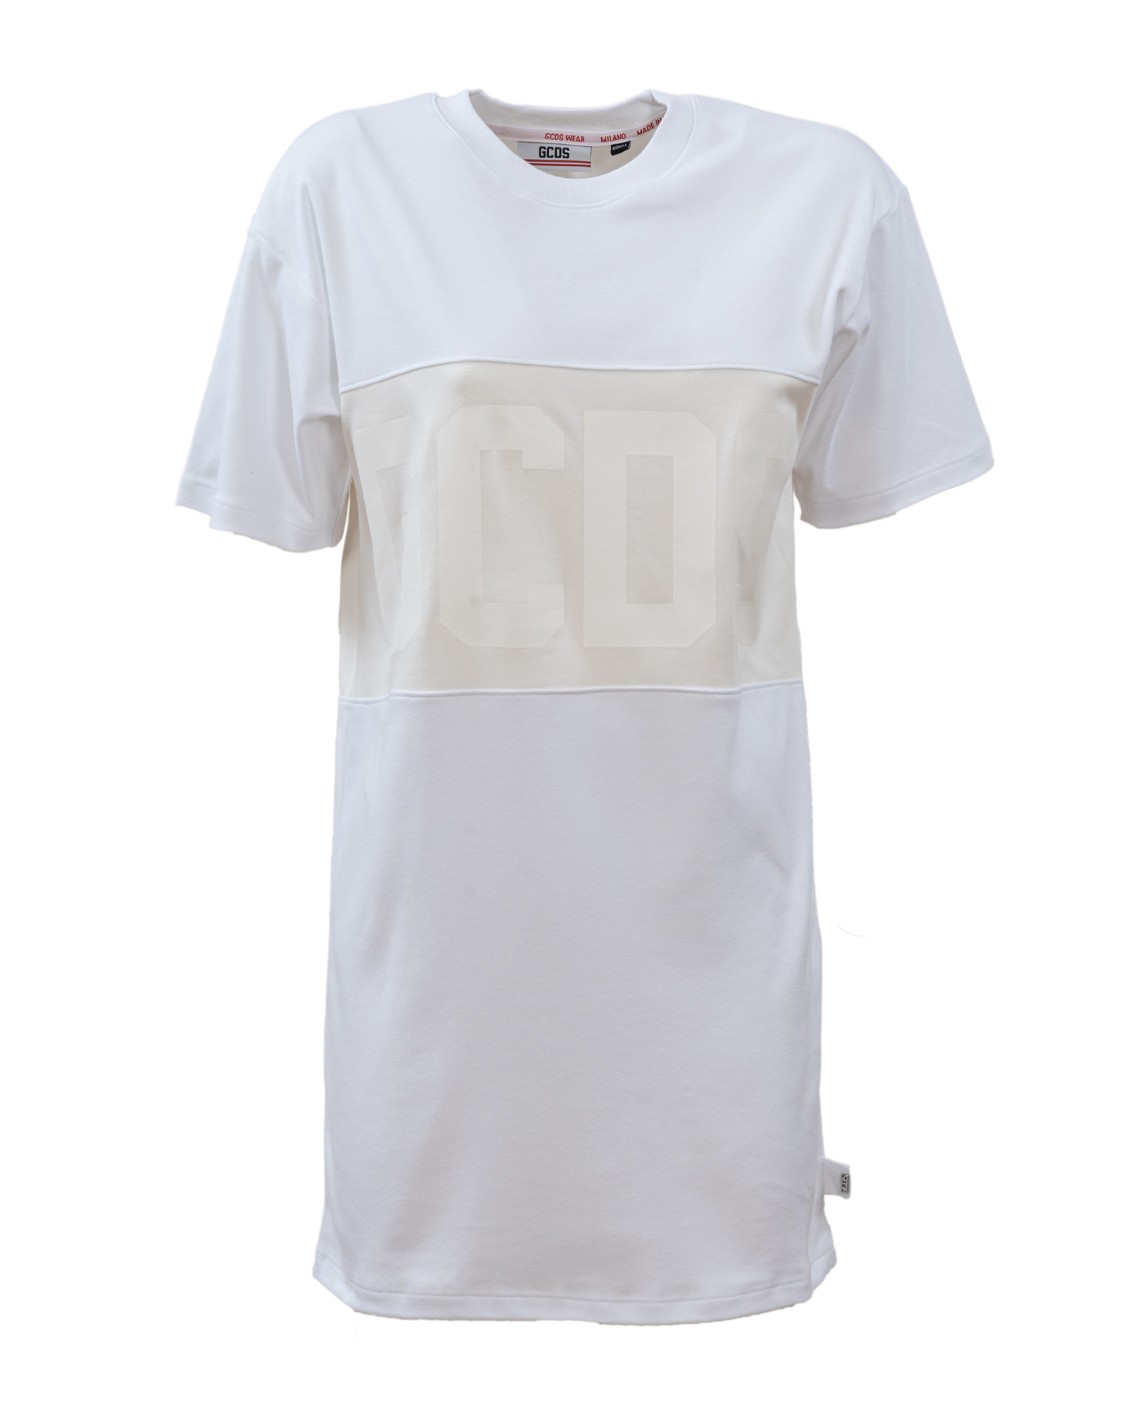 shop GCDS Saldi Abito: GCDS abito bianco.
Maxi logo, all around, tono su tono.
Girocollo.
Maniche corte.
Vestibilità regolare.
Composizione: 100% cotone.
Made in Italy.. CC94W020510-01 number 737160